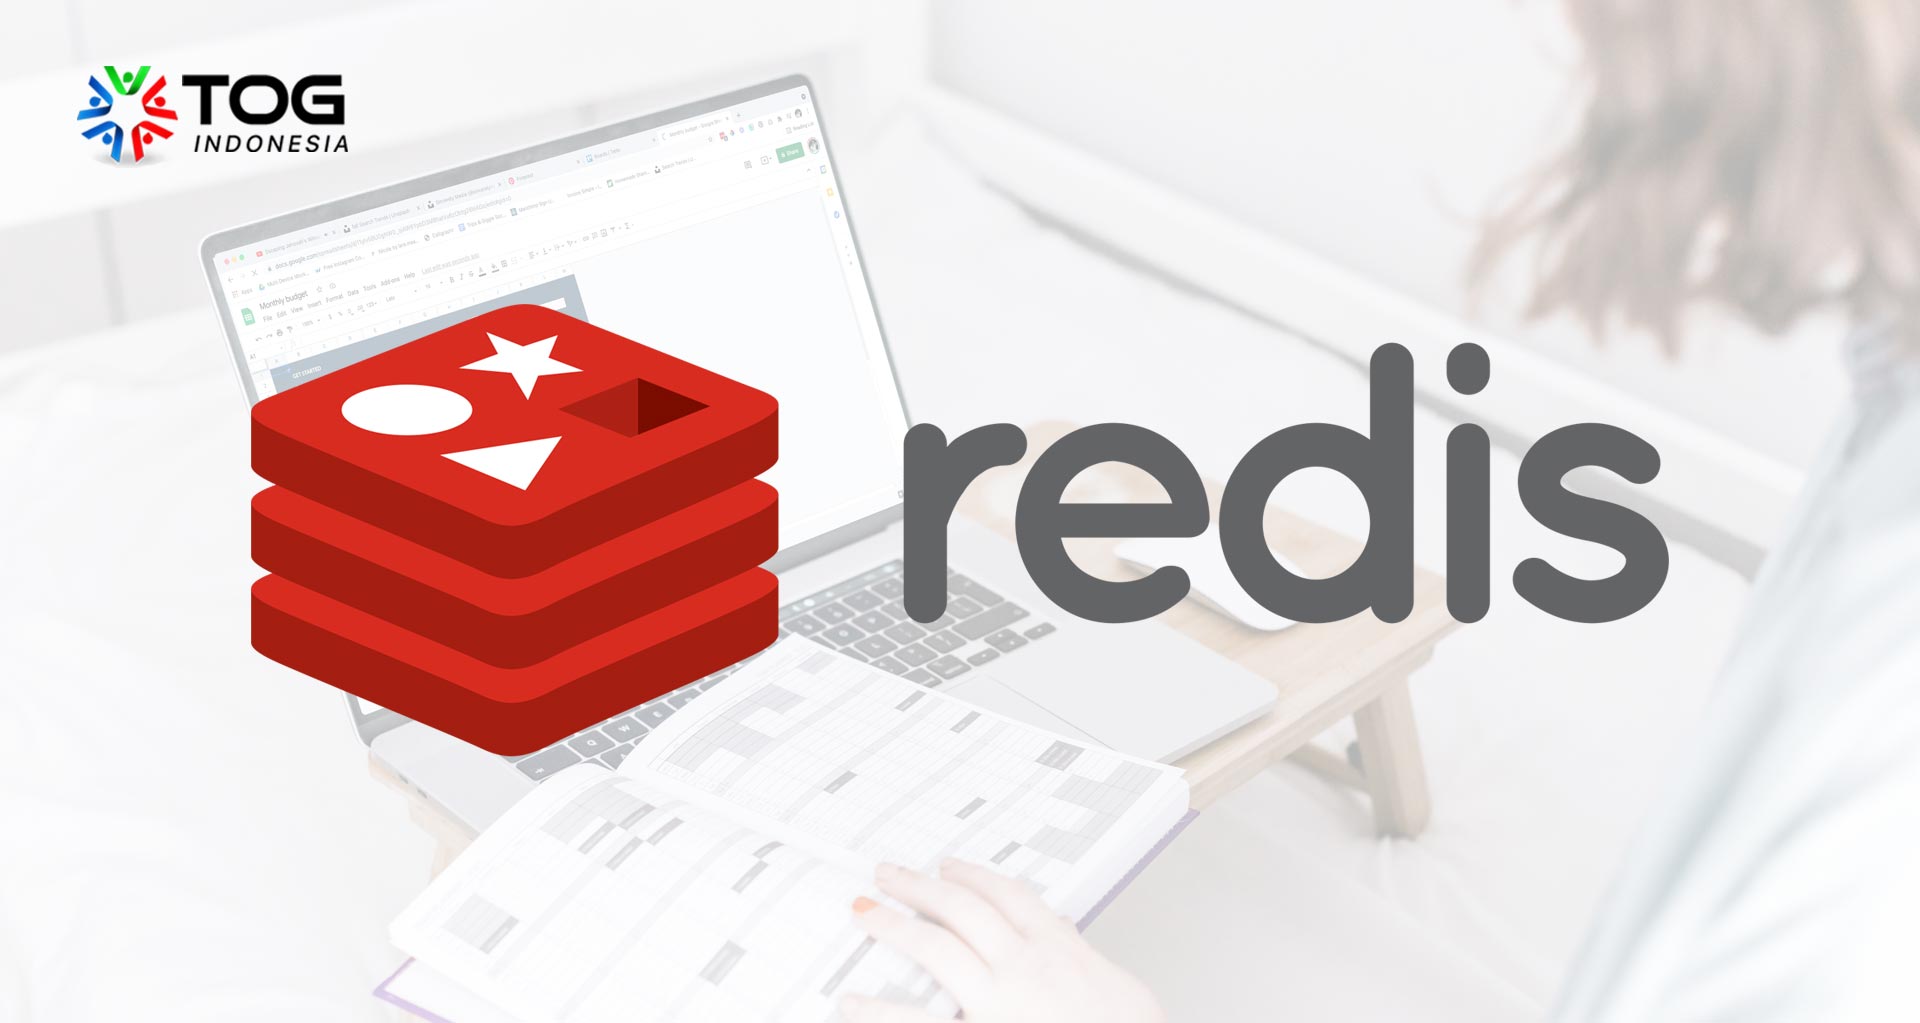 Redis Database